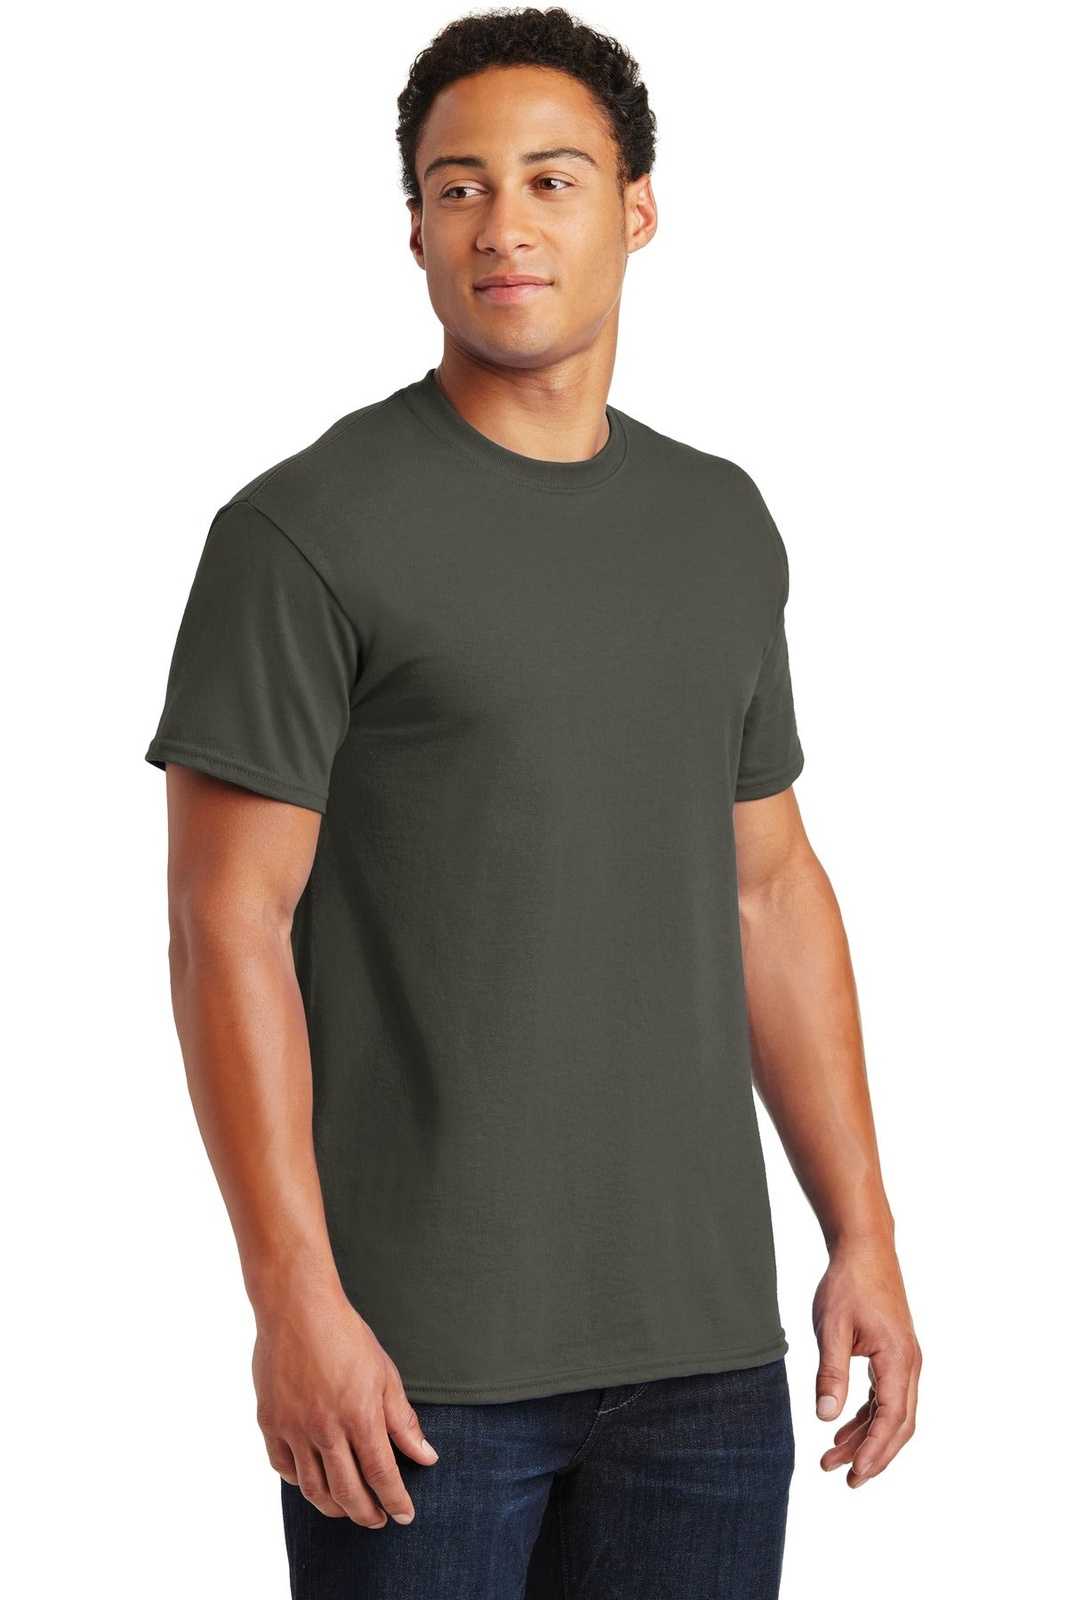 Gildan 2000 Ultra Cotton 100% Cotton T-Shirt - Olive - HIT a Double